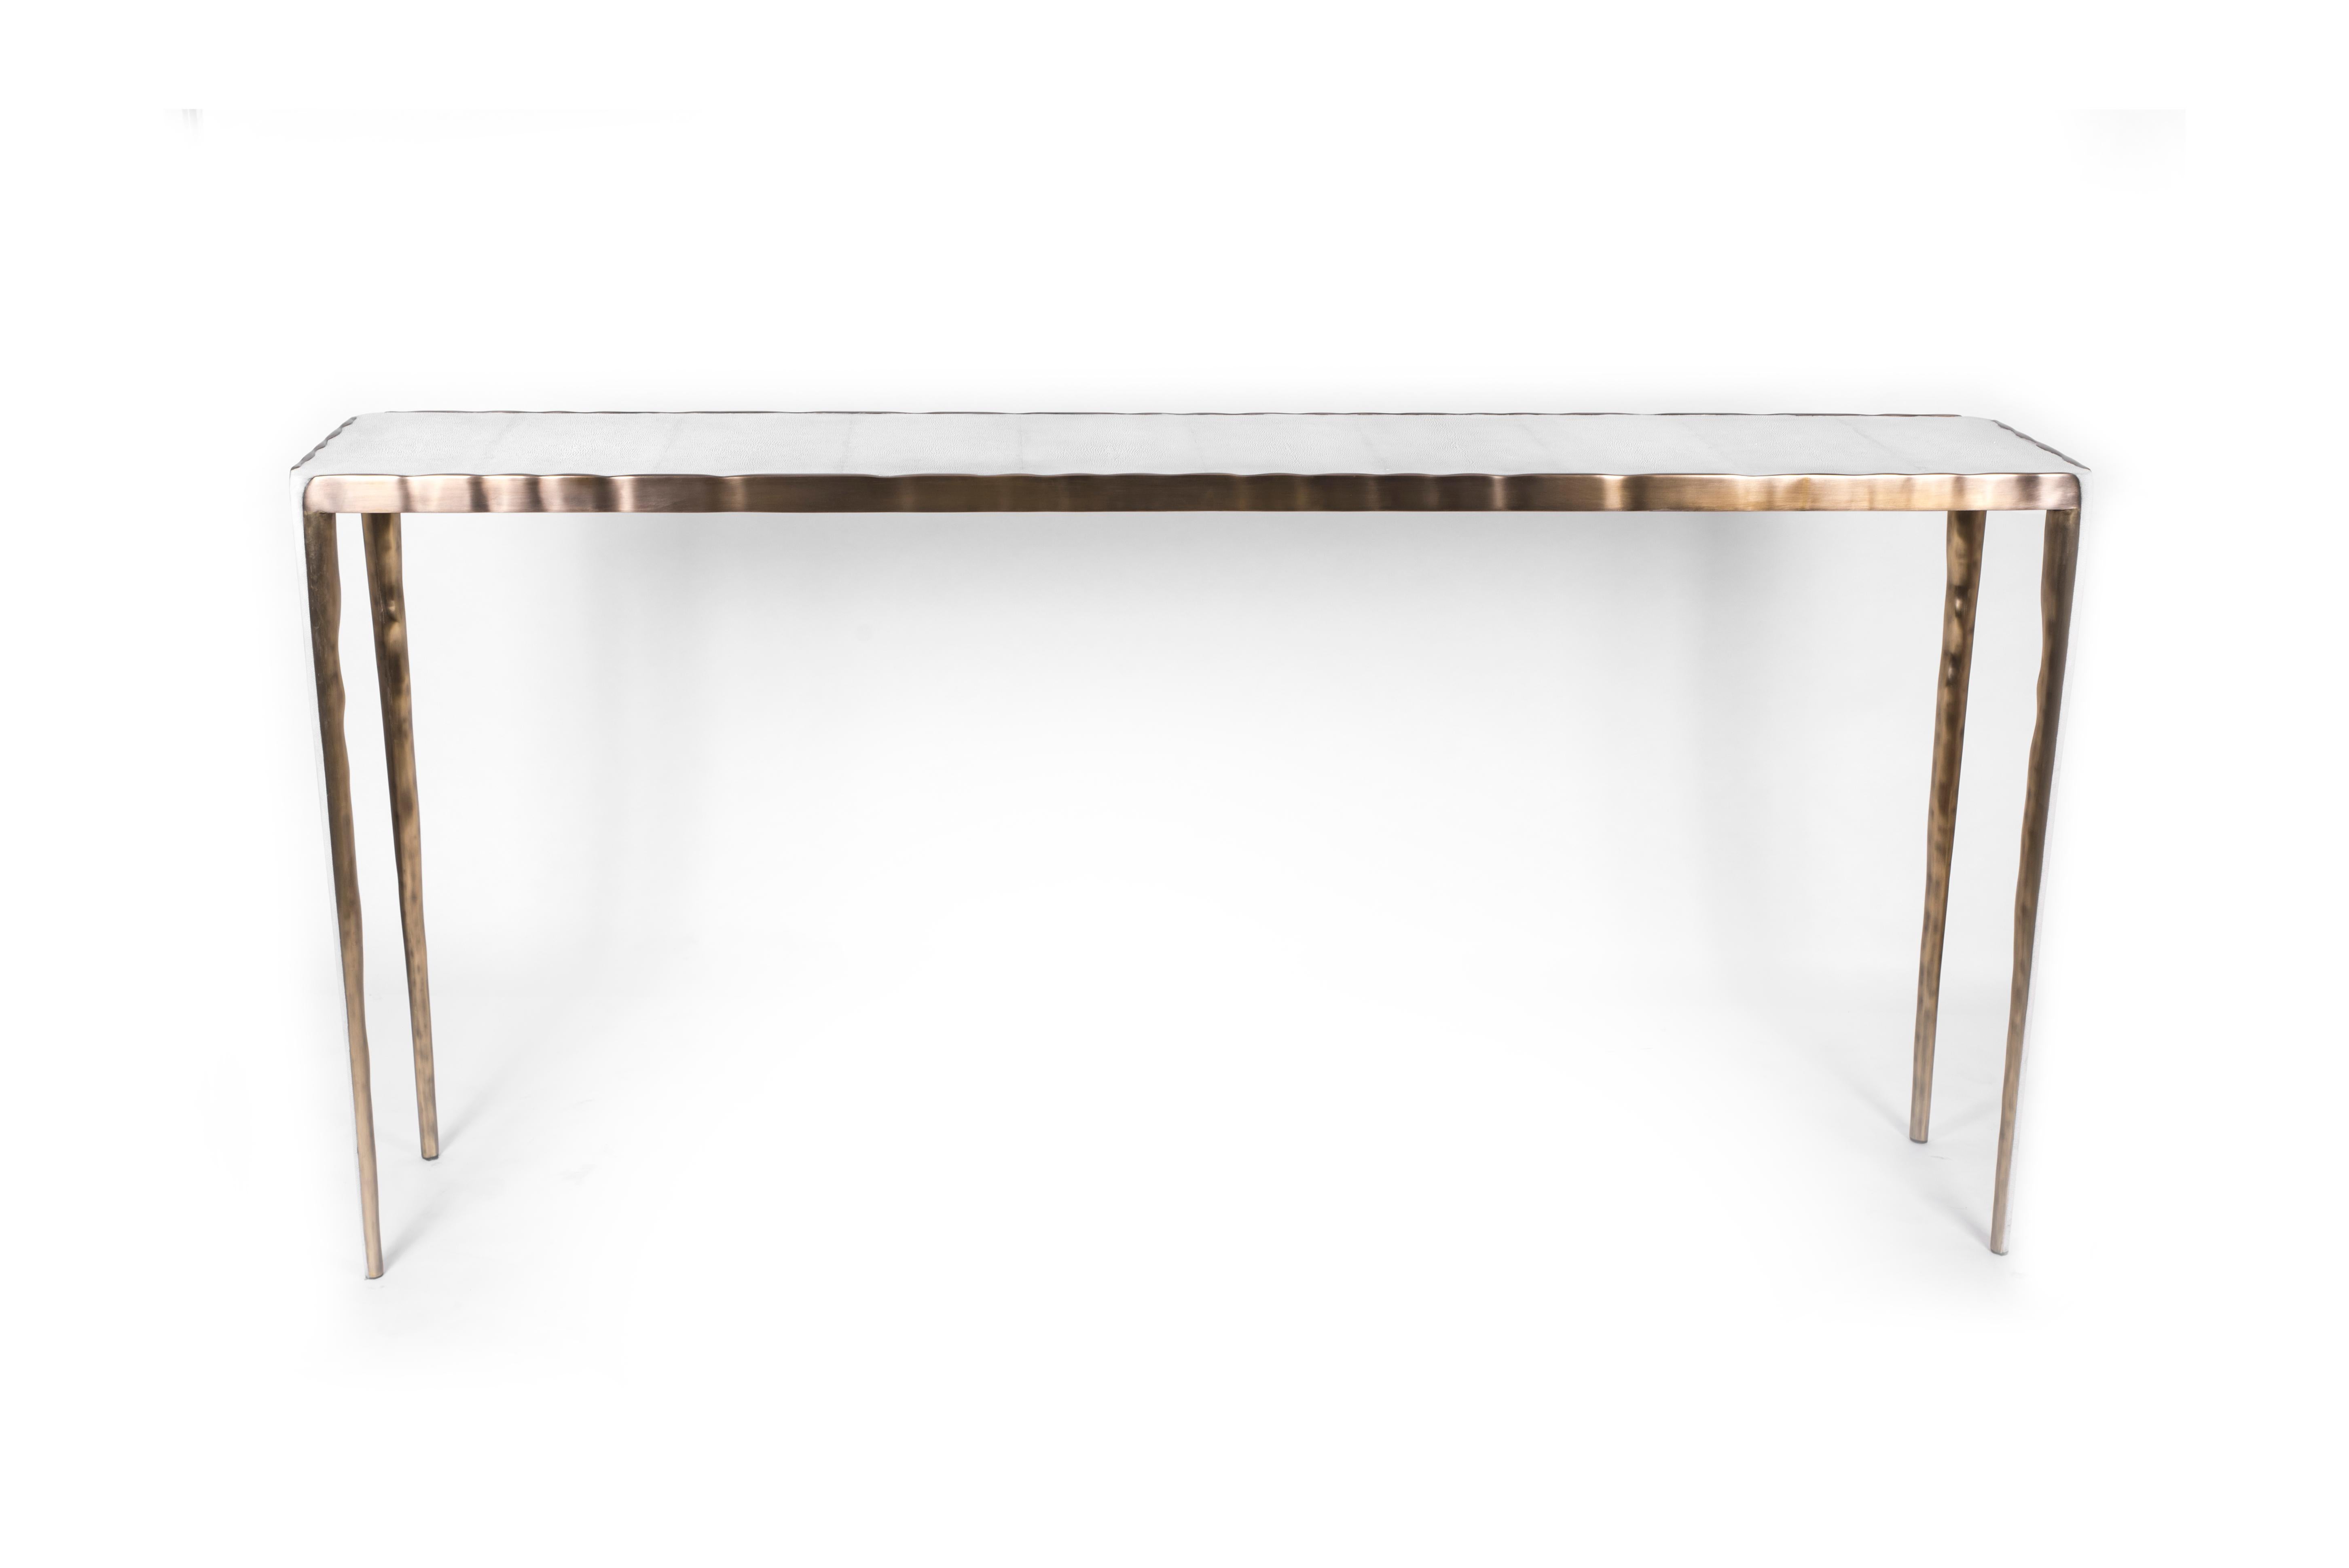 Le design simple mais élégant de la table console melting en fait un meuble neutre adaptable. Le plateau en galuchat crème est encadré d'une surface irrégulière en laiton bronze-patine qui crée un effet de 